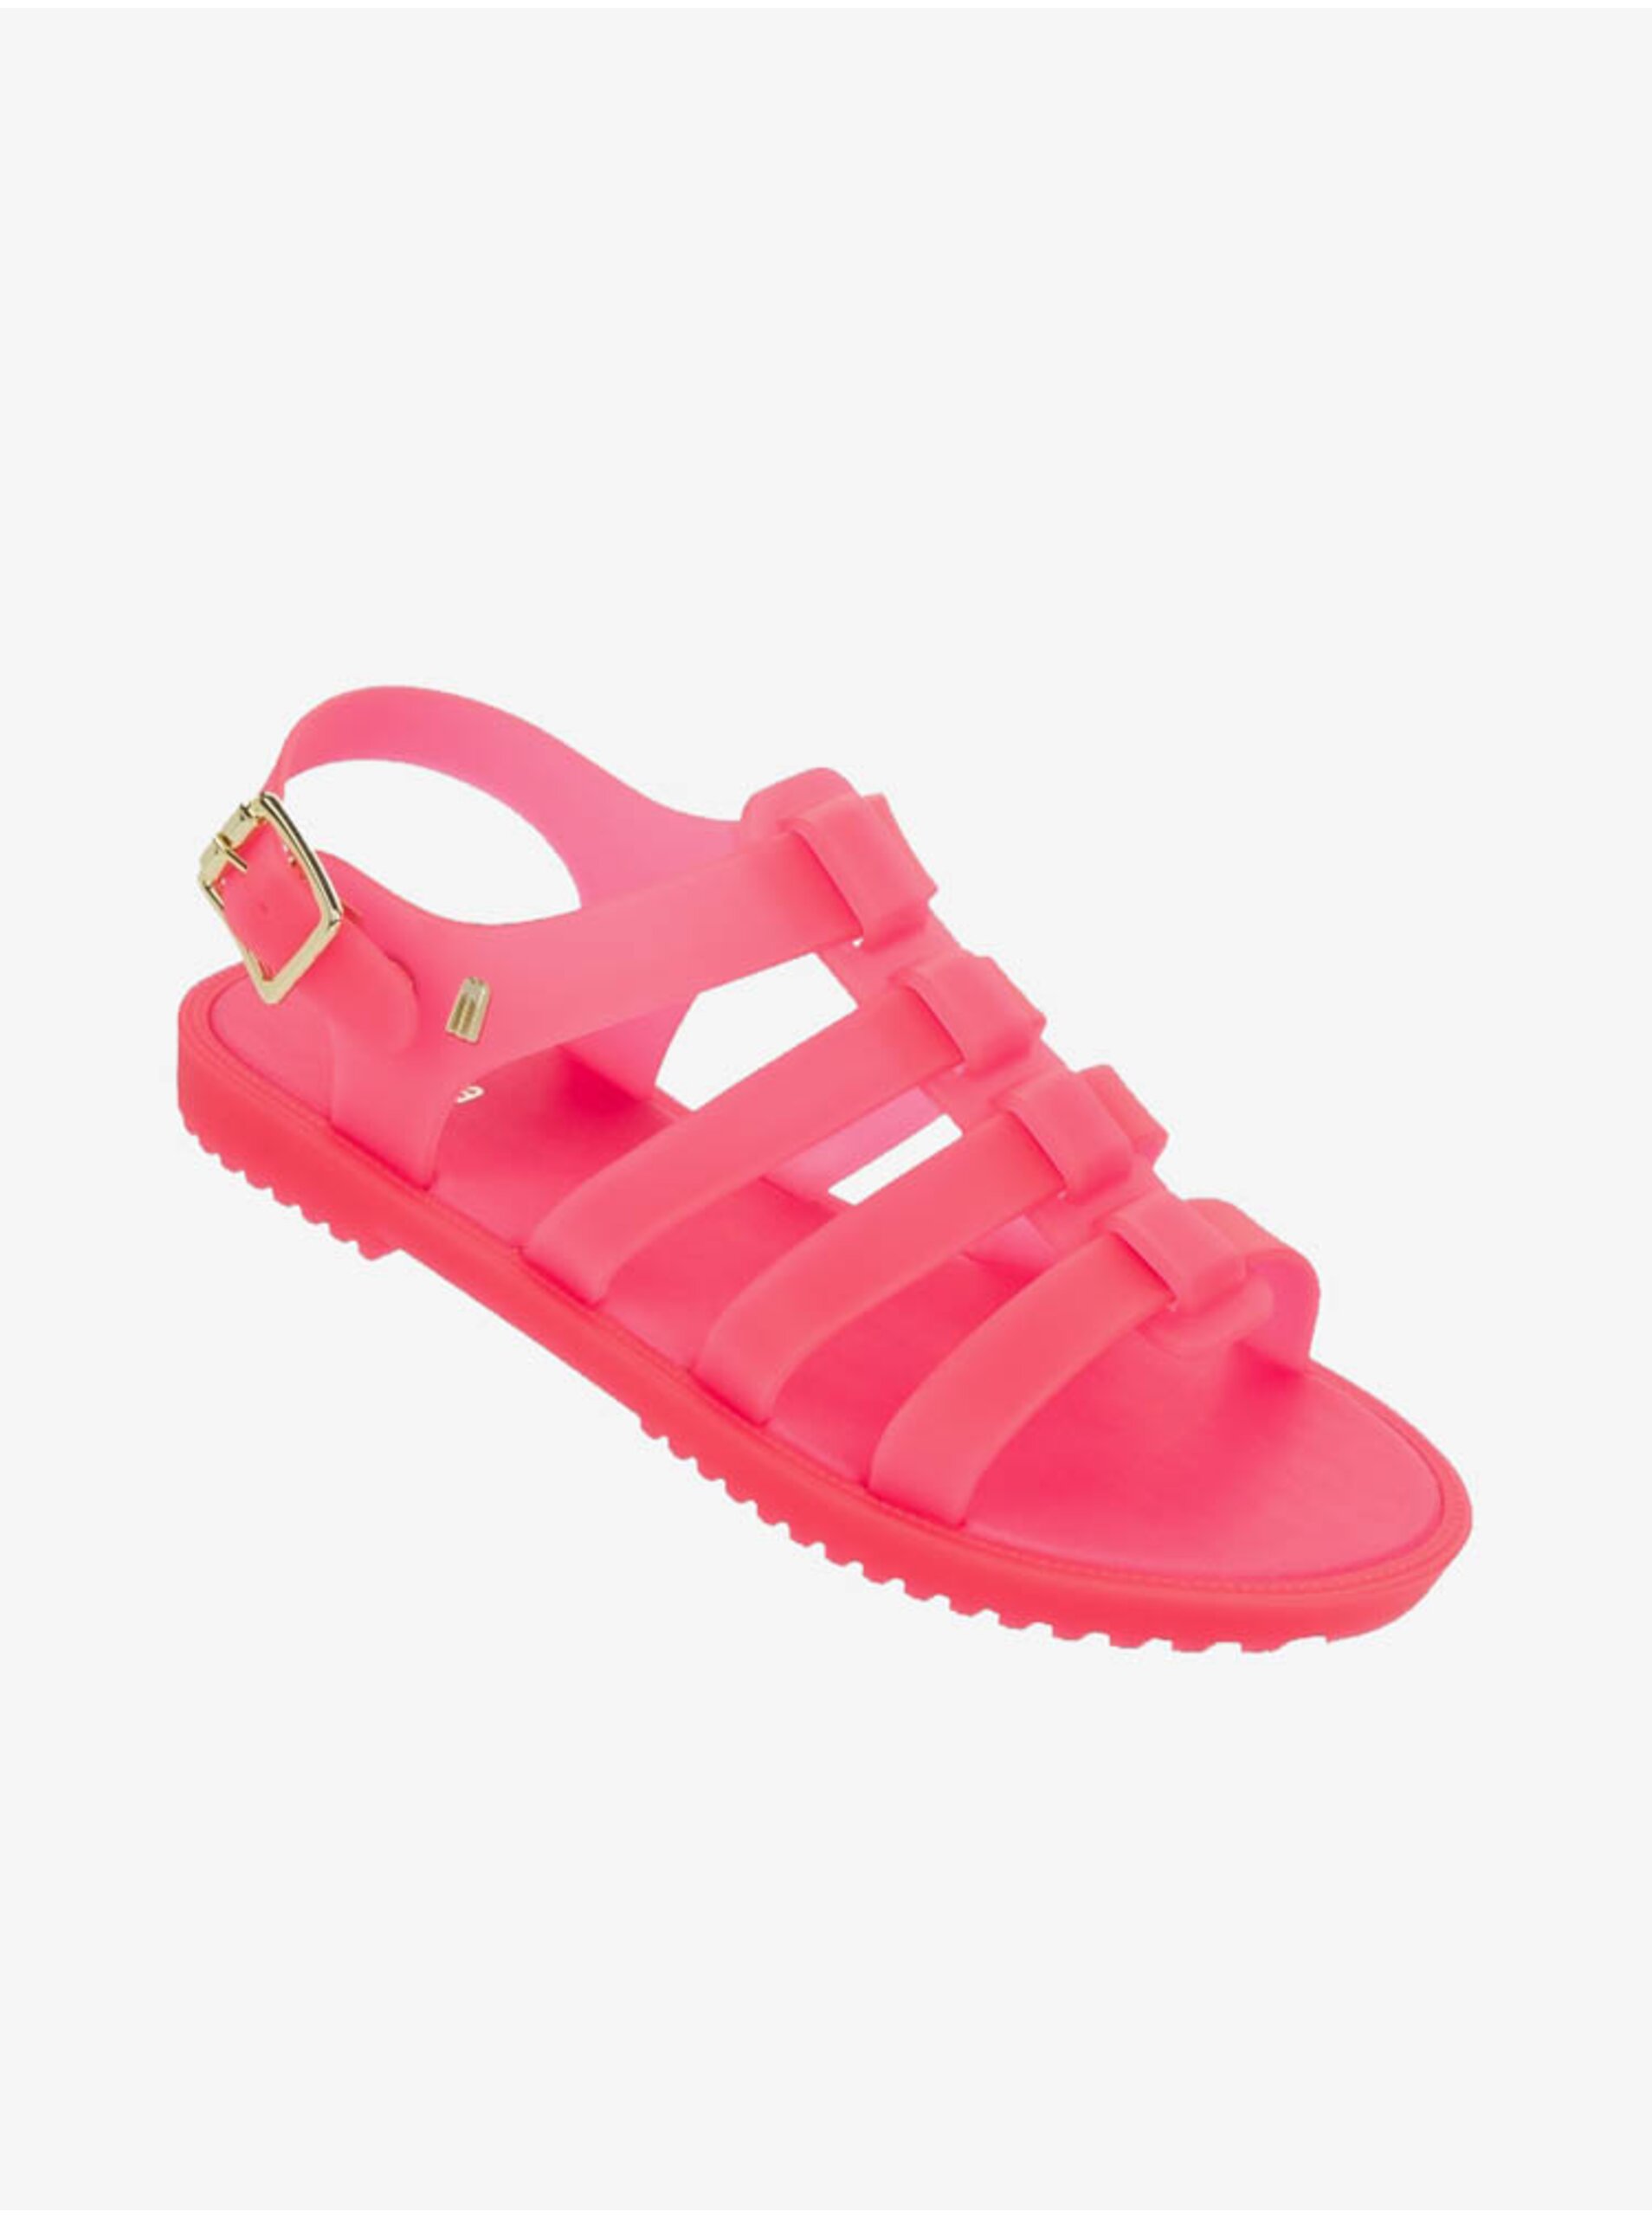 Lacno Ružové dámske sandálky Melissa Flox